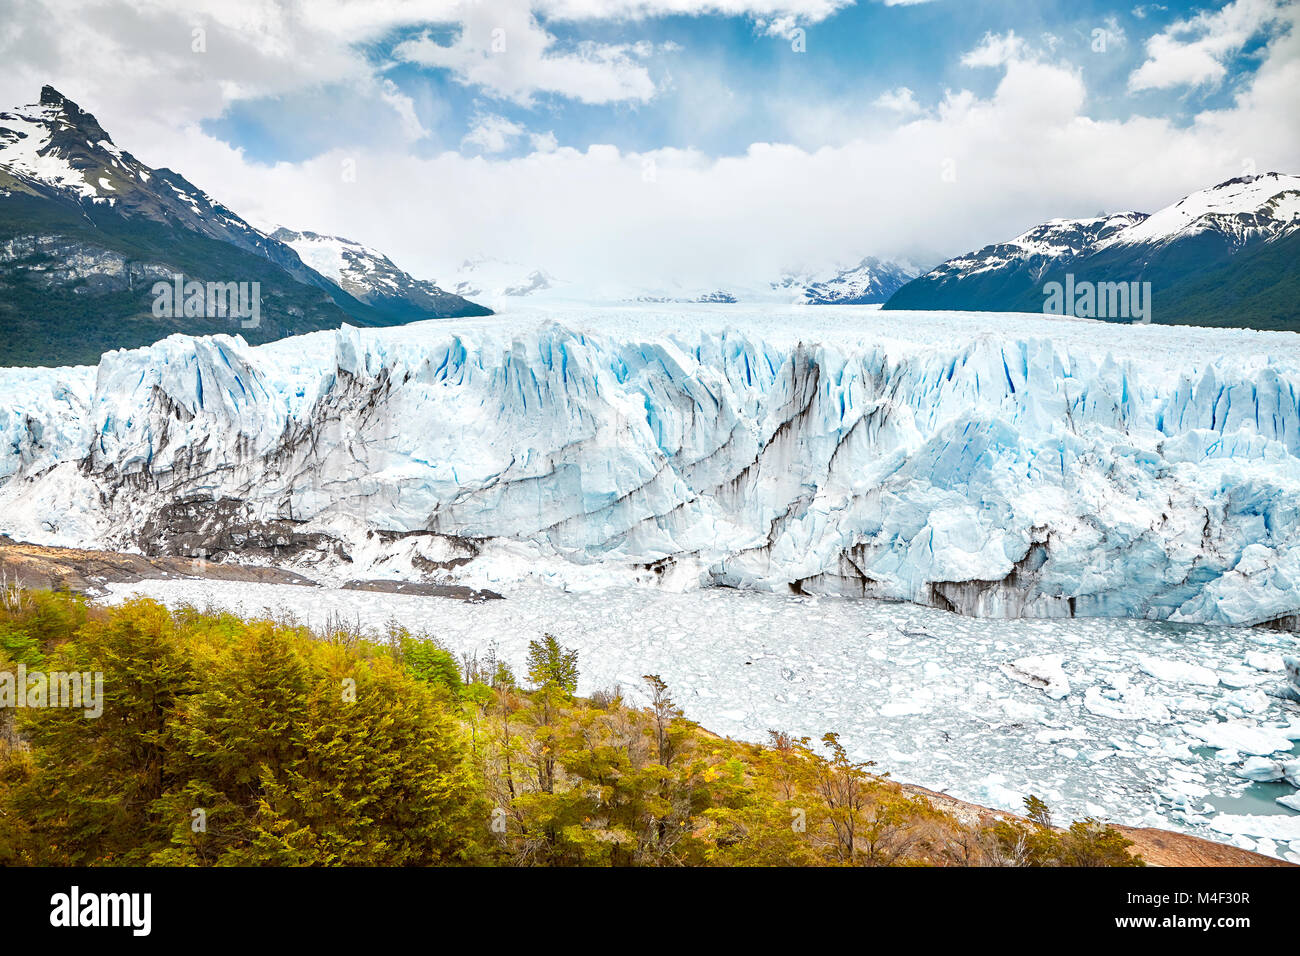 Perito Moreno Glacier, one of Argentina travel top destinations. Stock Photo